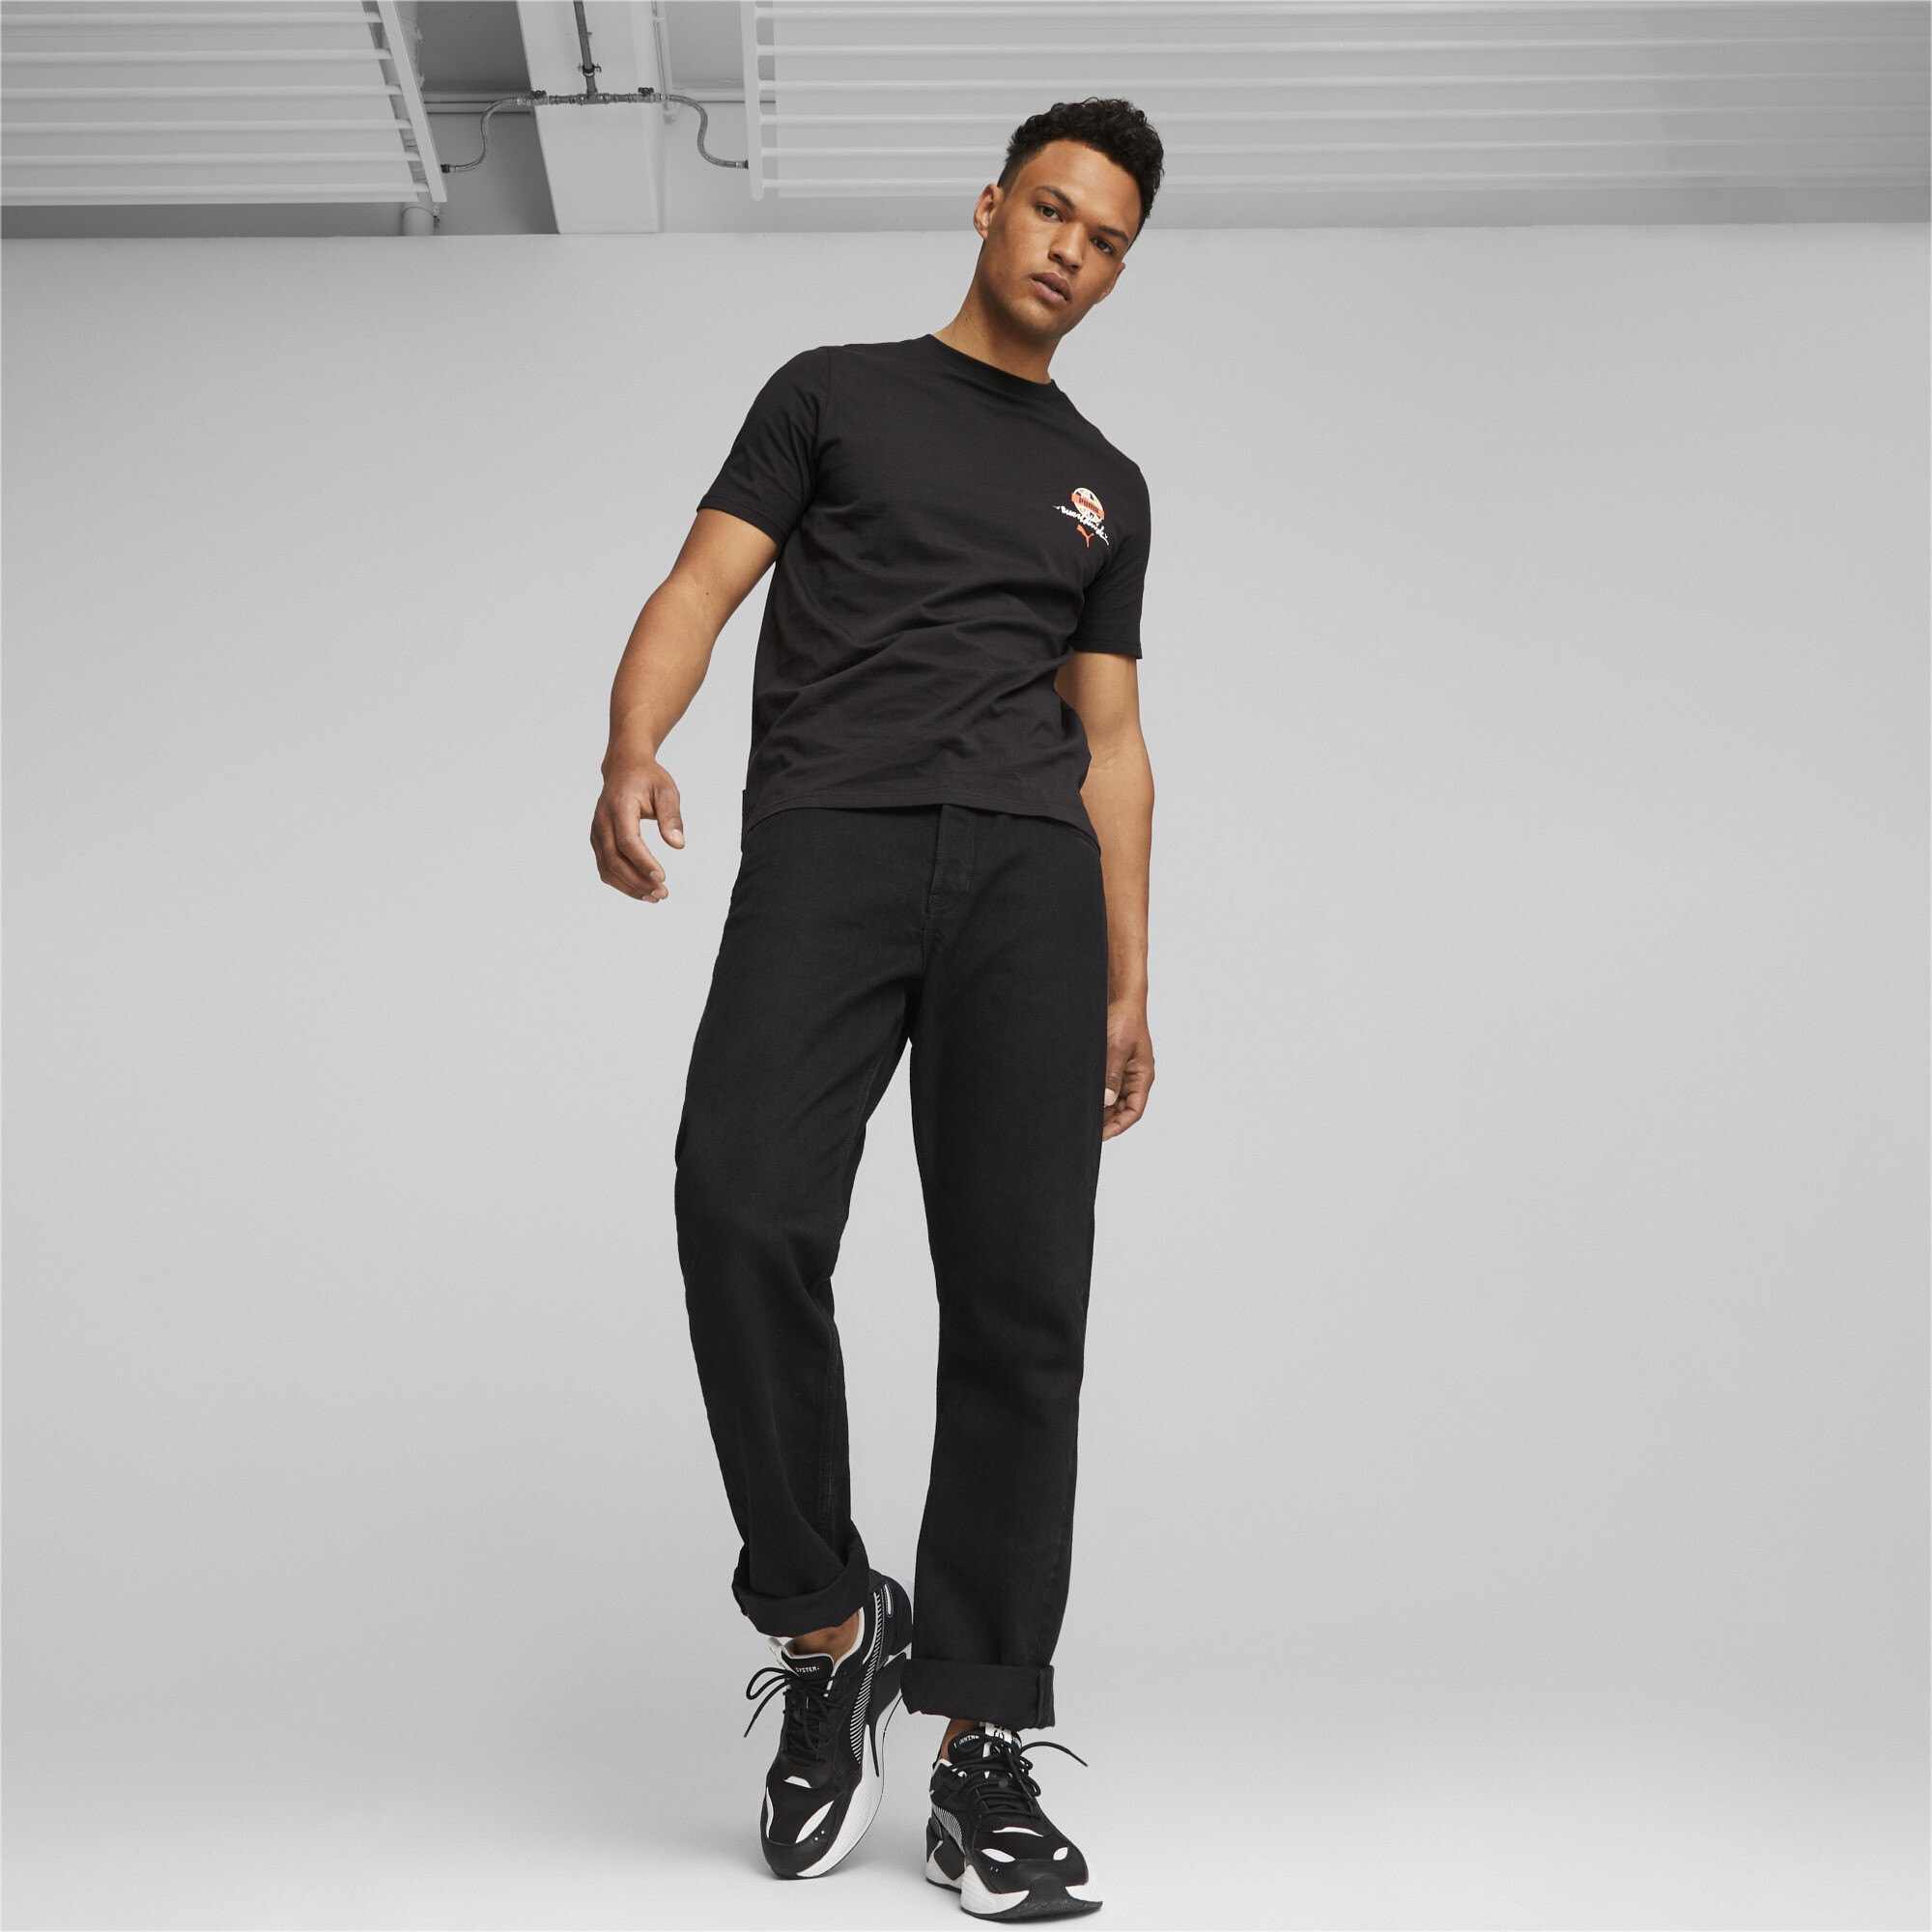 Men's Sportswear By PUMA T-Shirt In Black, Size Small